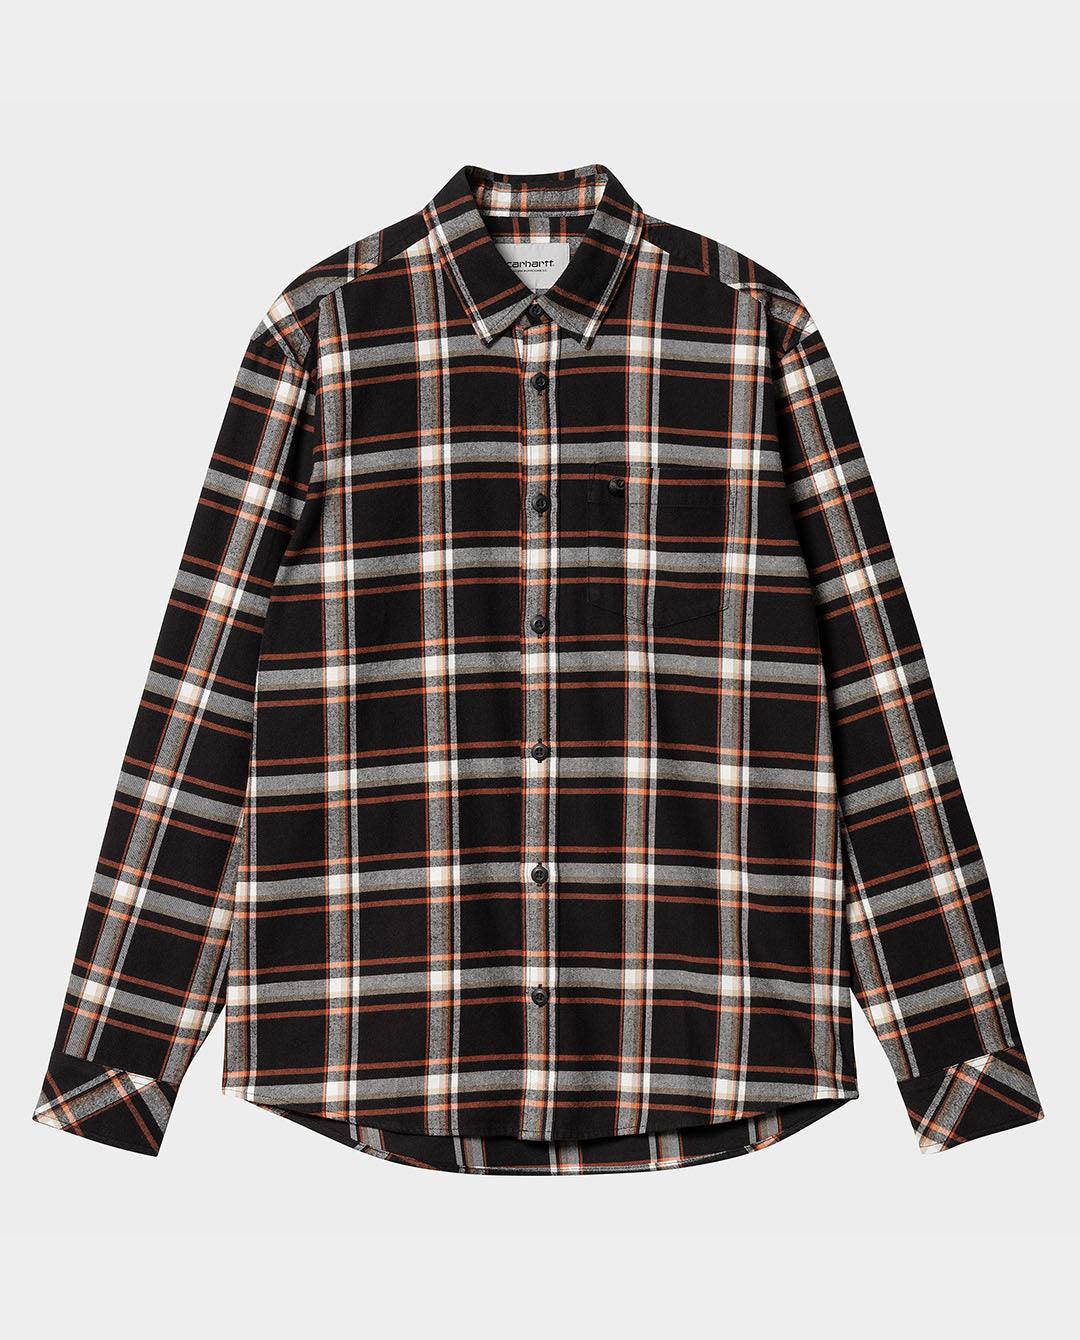 Carhartt WIP - Barten LS Check Shirt - Black Shirts Carhartt   